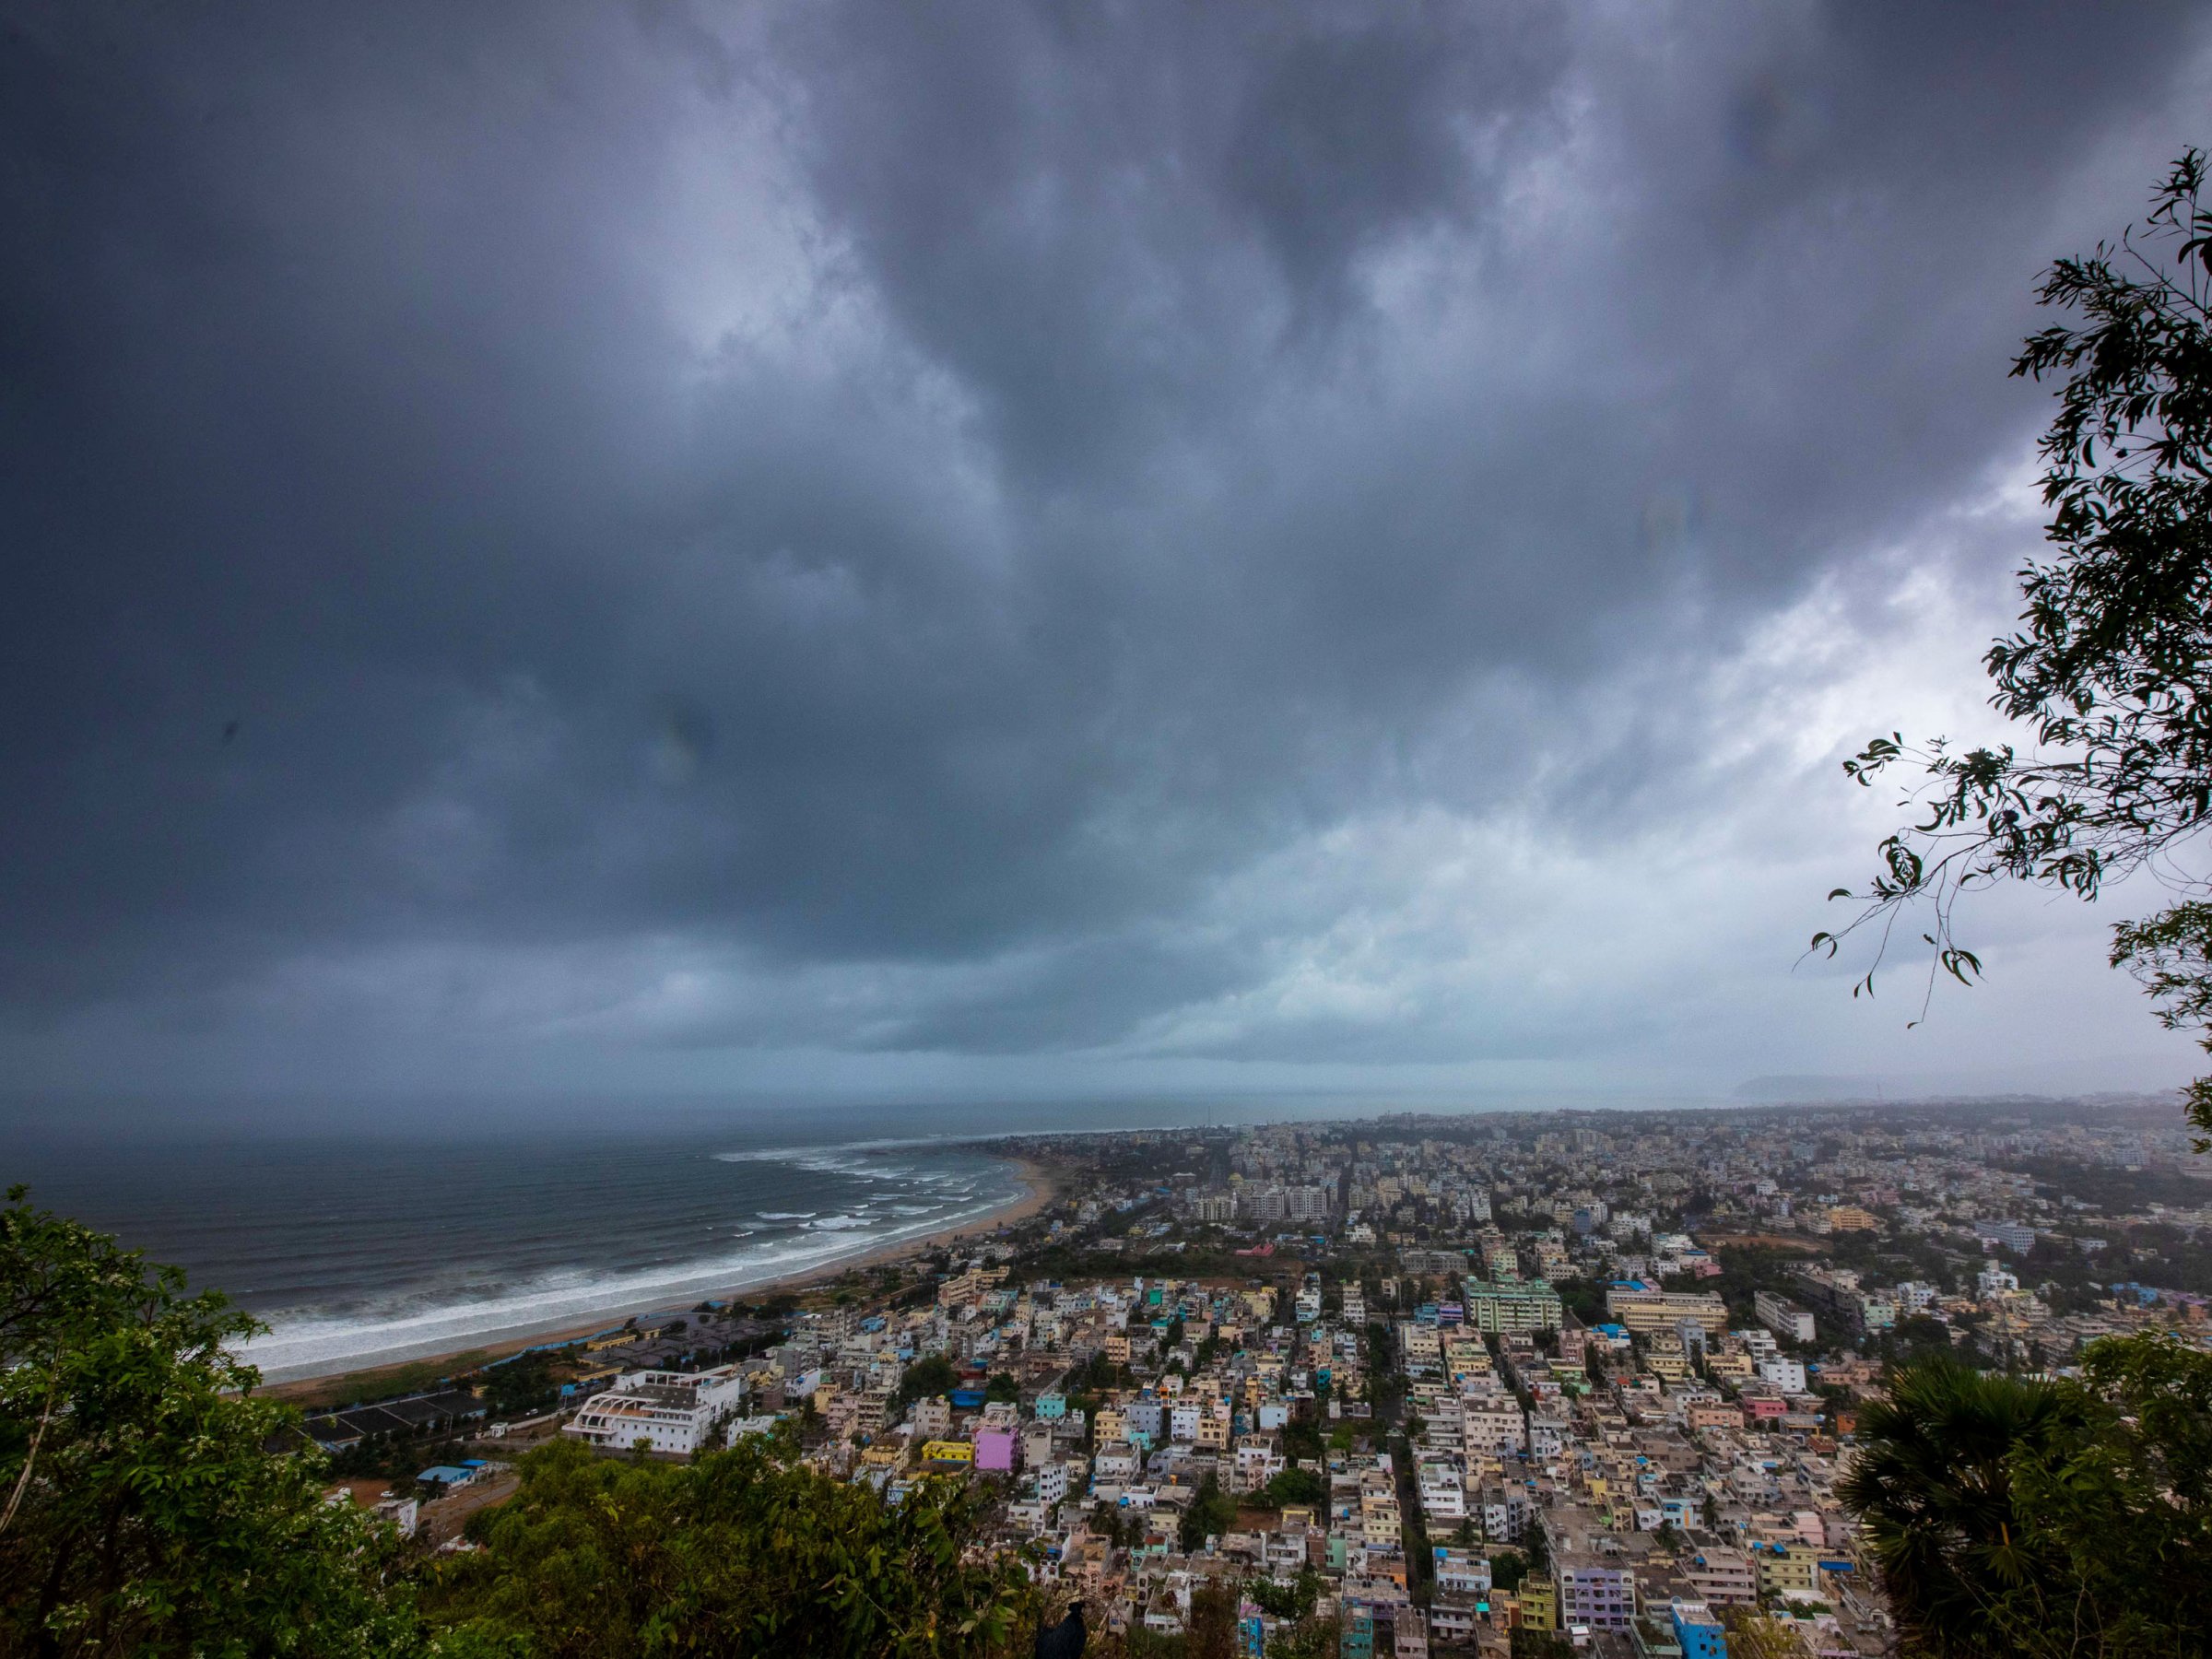 OrganizaÅ£iile creÅtine oferÄ ajutor Ã®n zonele afectate de ciclonul Fani din India